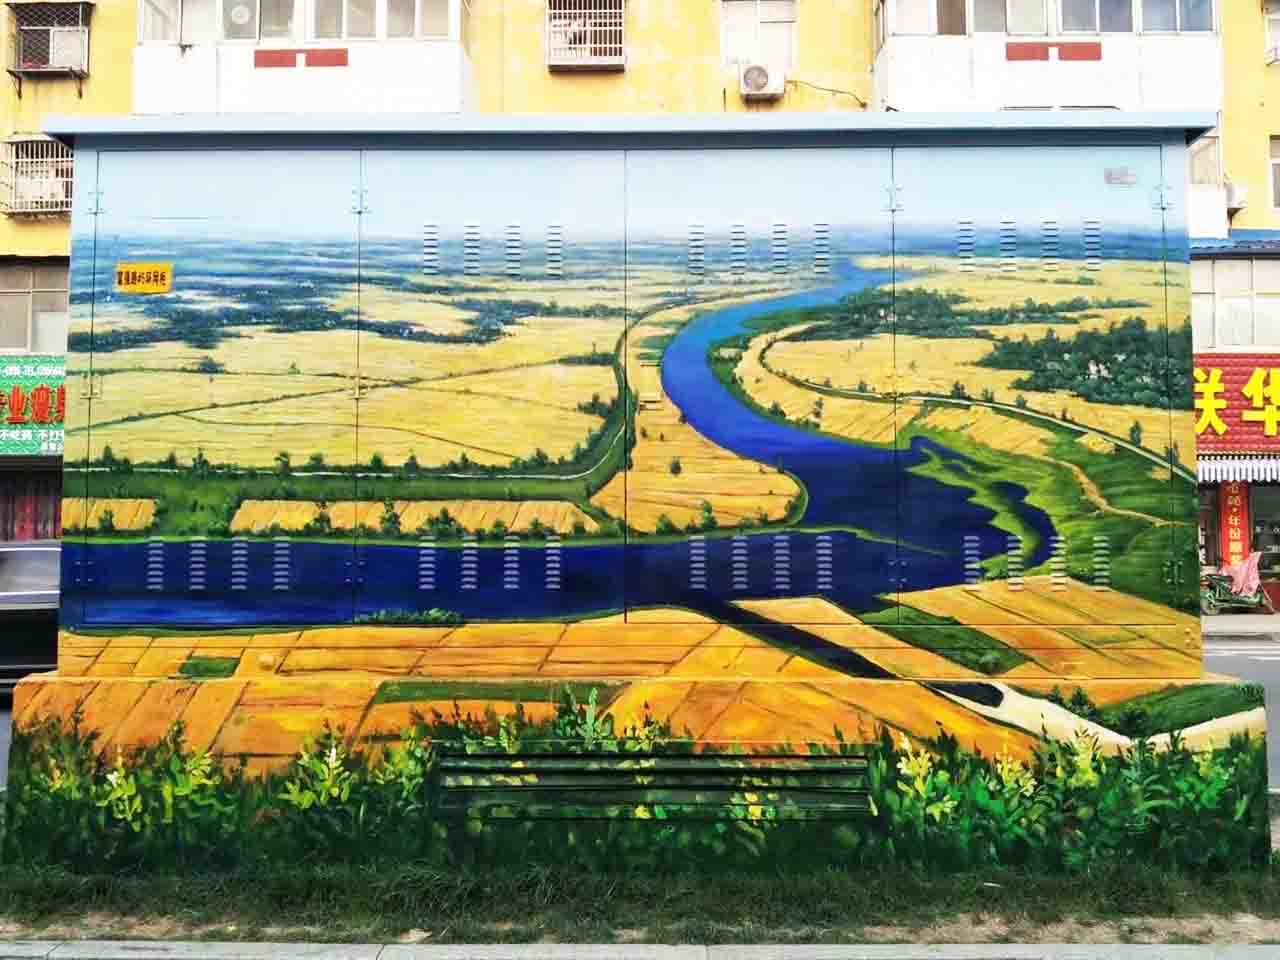 市政景区街道配变电箱丰收写实乡村风景创意墙绘壁画彩绘涂鸦手绘成都澜泉文化